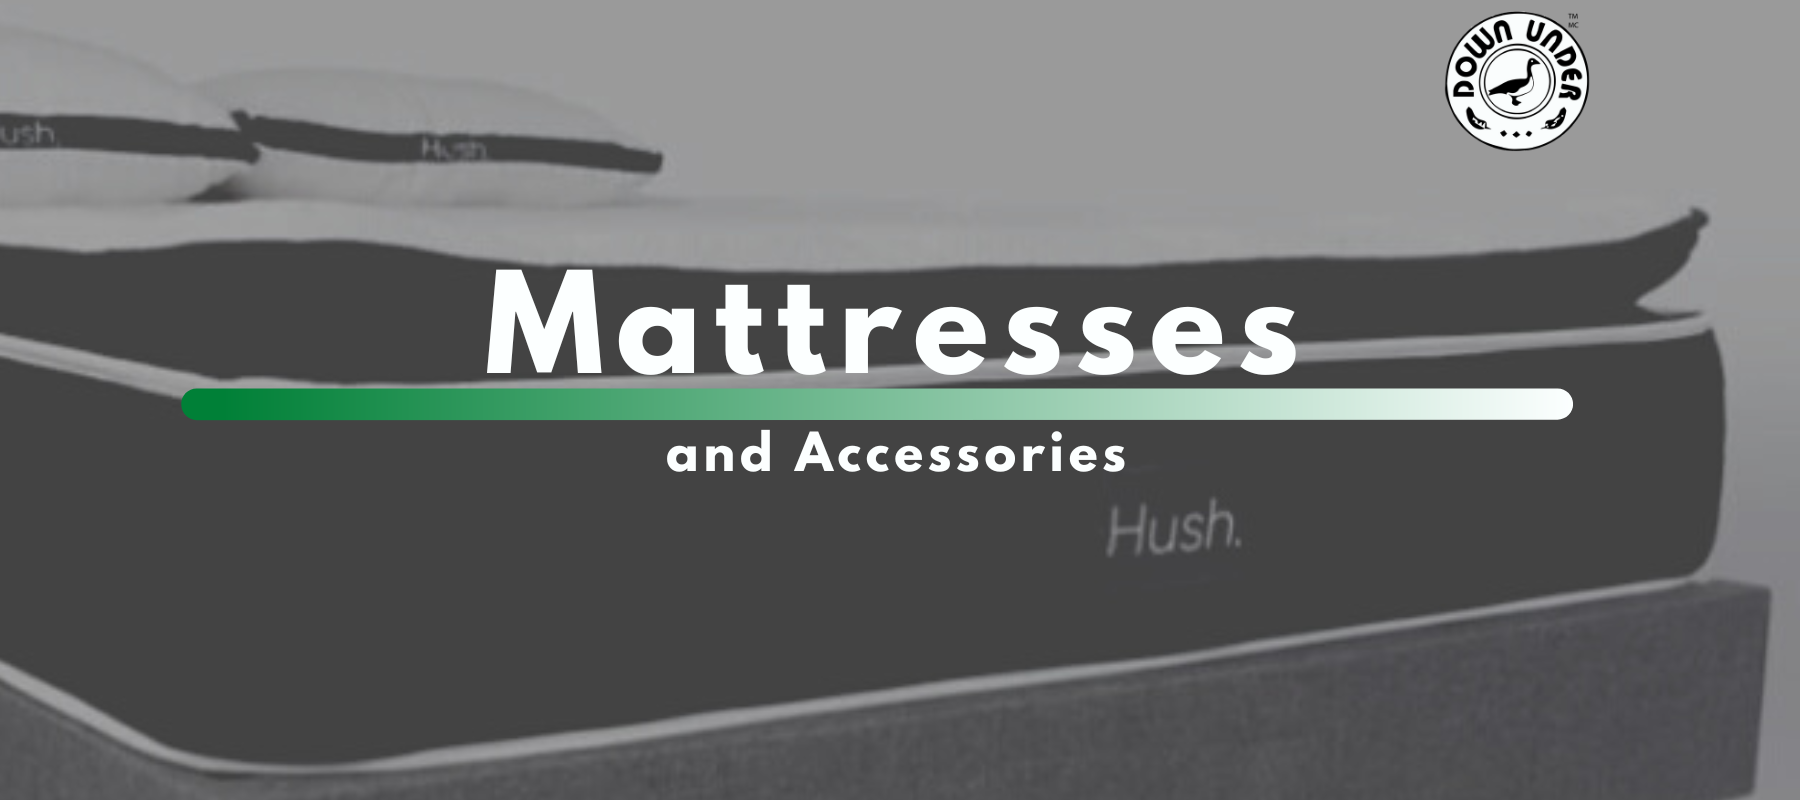 Mattress - All